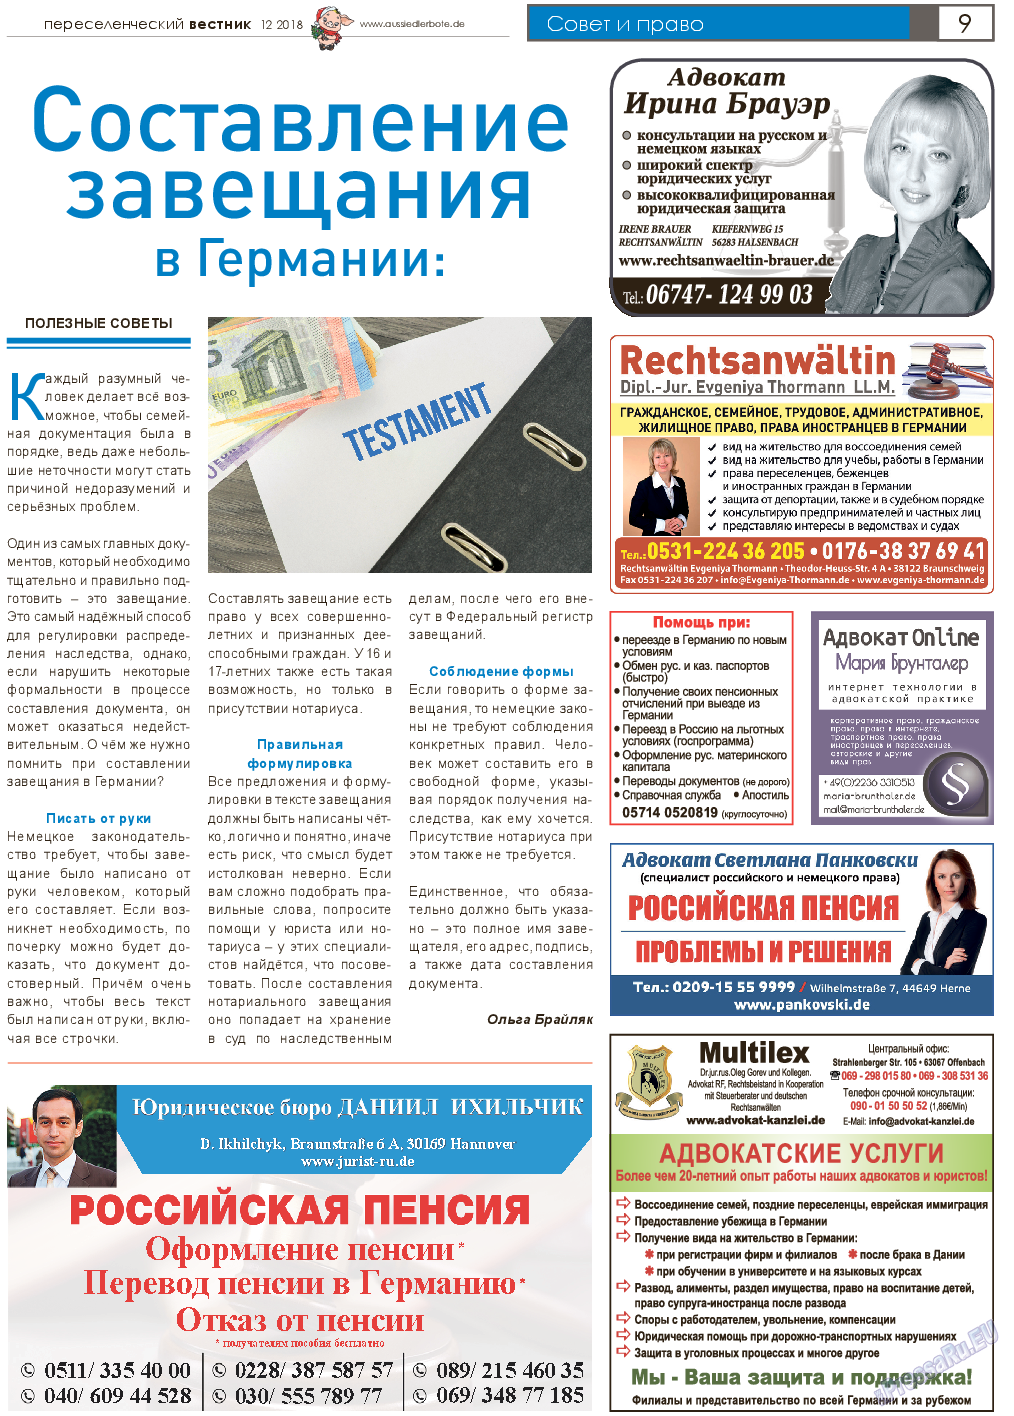 Переселенческий вестник, газета. 2018 №12 стр.9